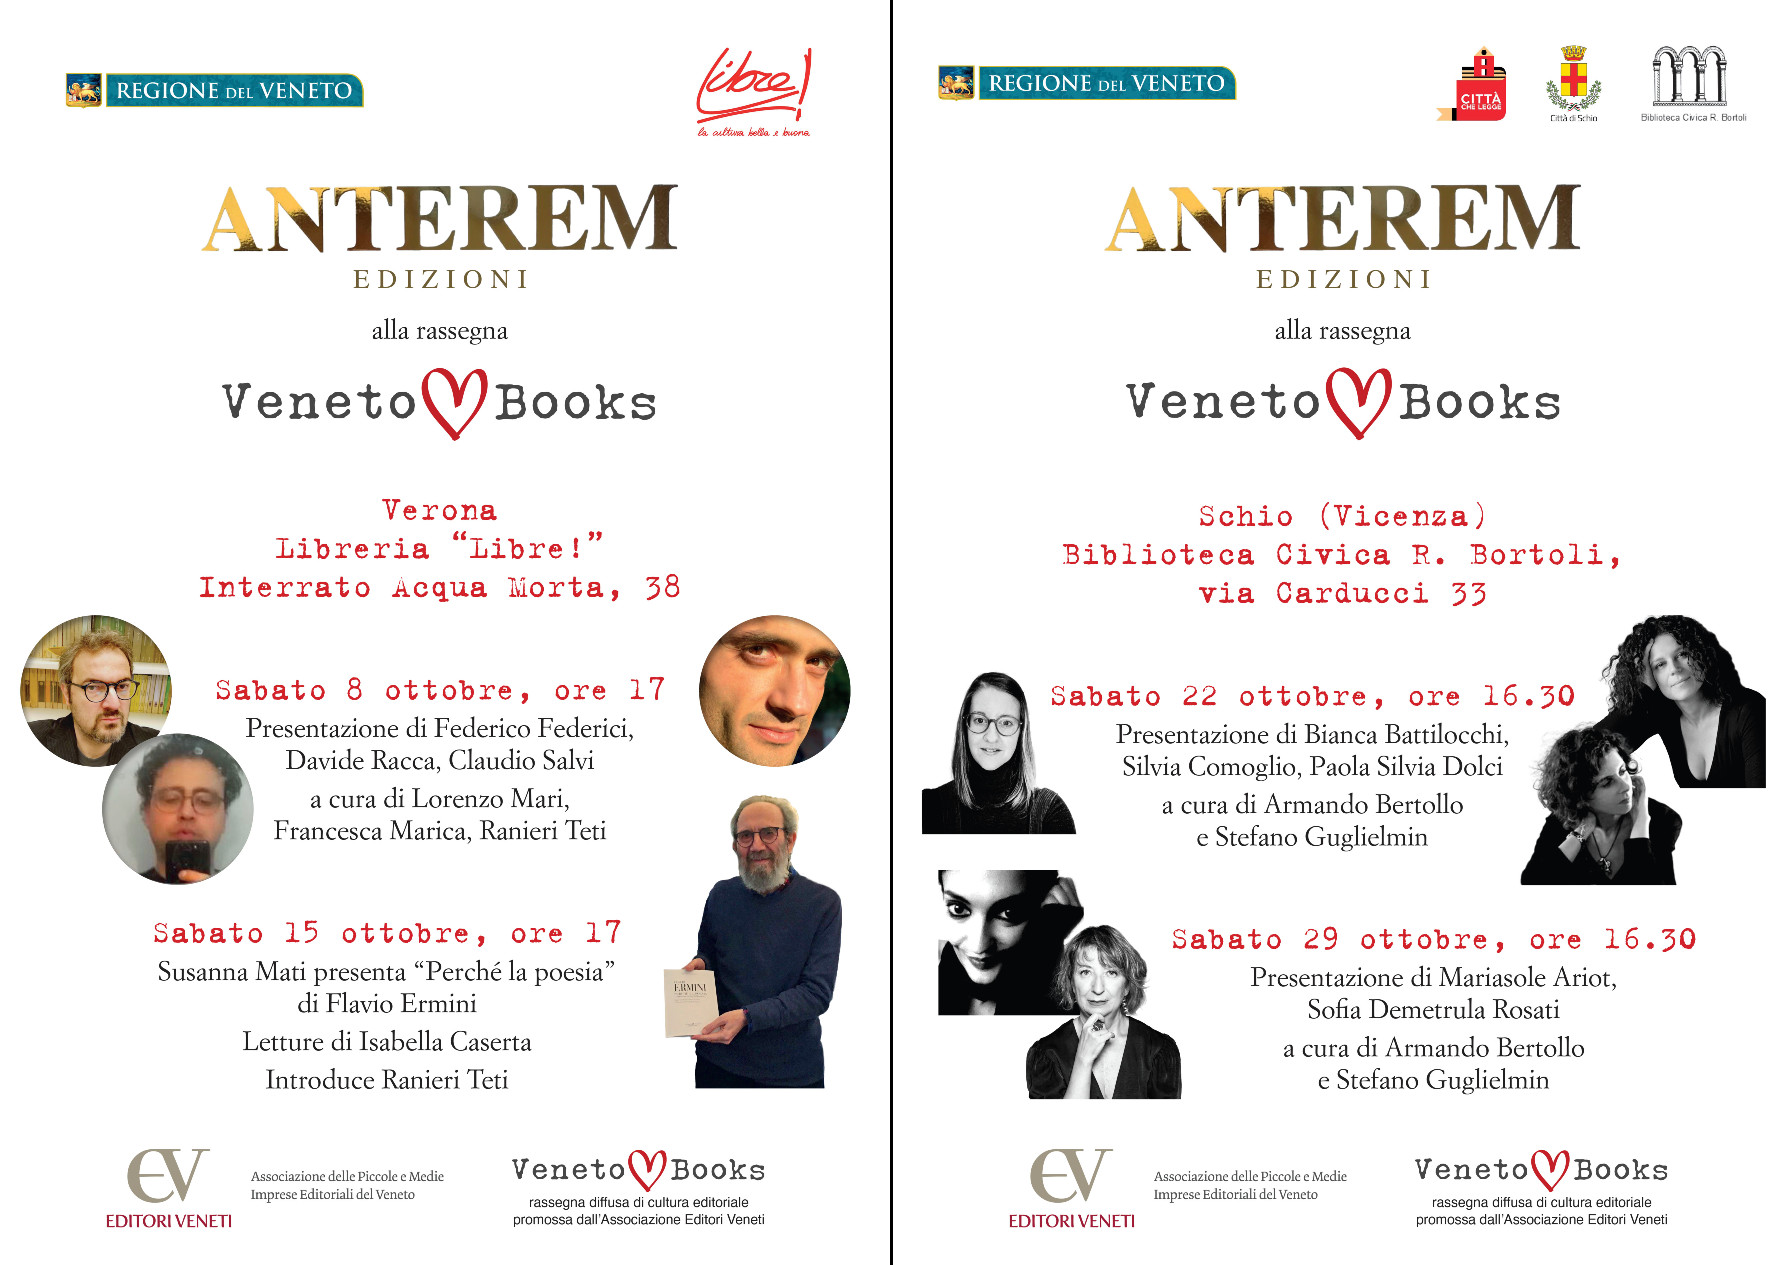 Veneto Books